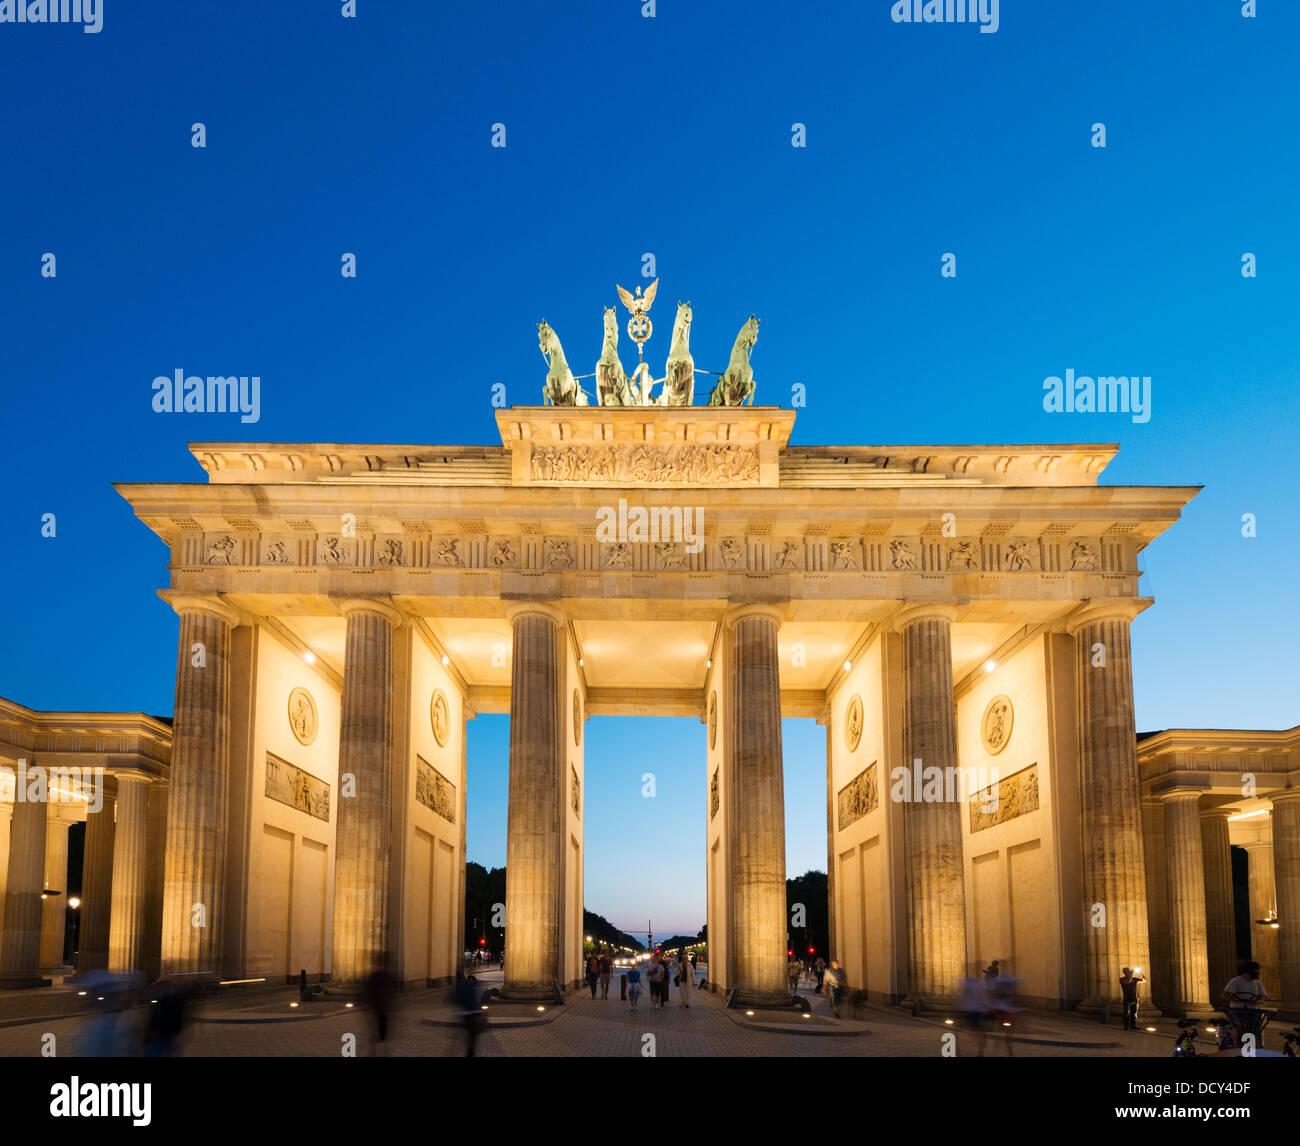 Vue de nuit sur la porte de Brandebourg à Berlin Allemagne Banque D'Images